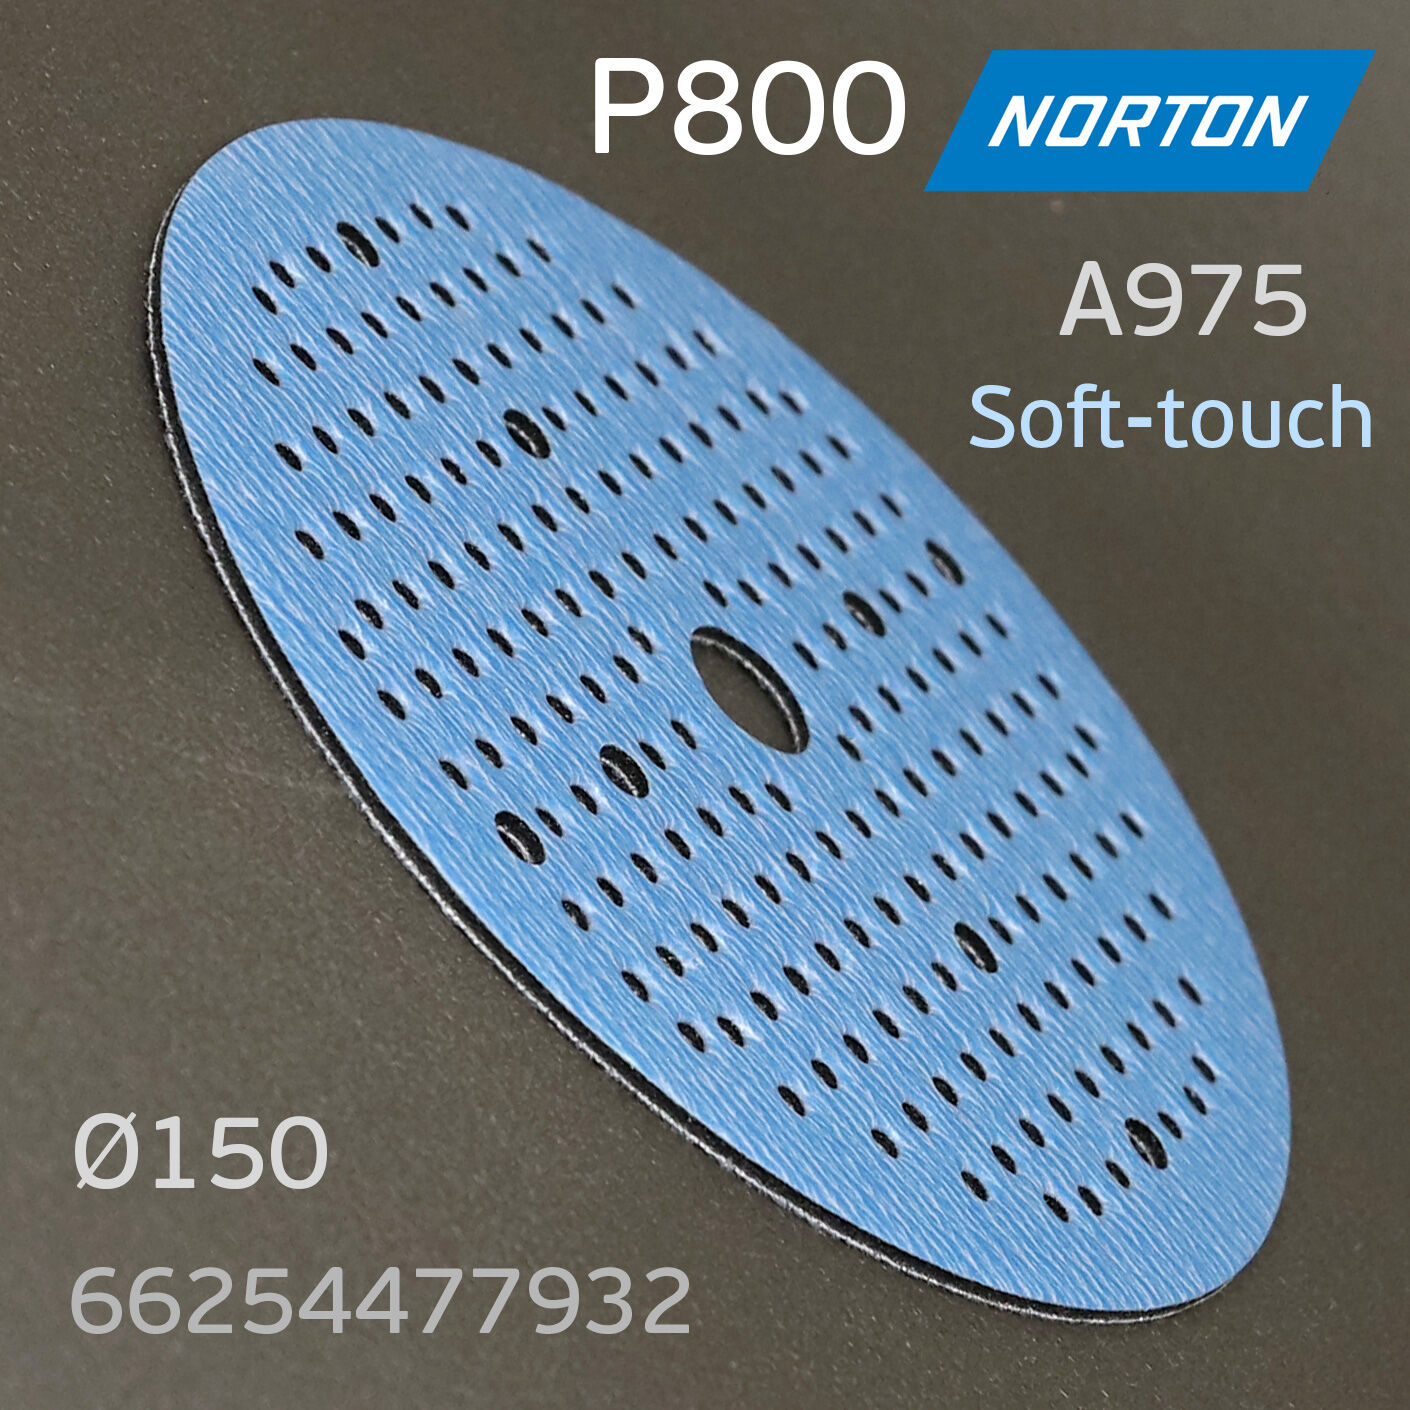 Круг шлифовальный Norton A975 Р800 на поролоне Soft-touch (181отв.) липучка